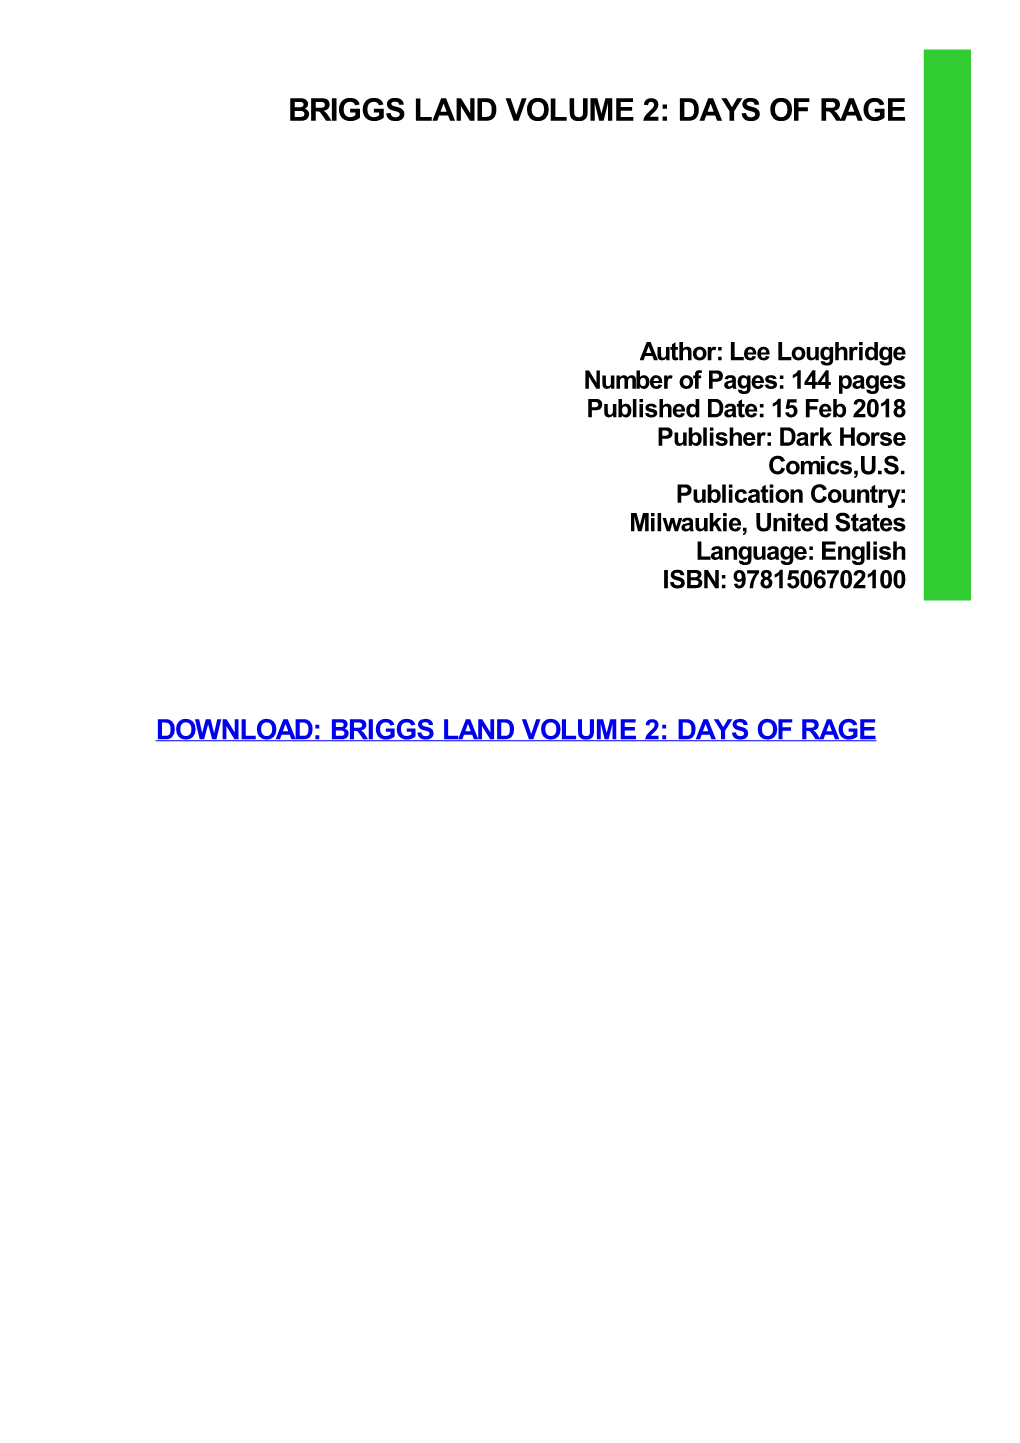 Briggs Land Volume 2: Days of Rage